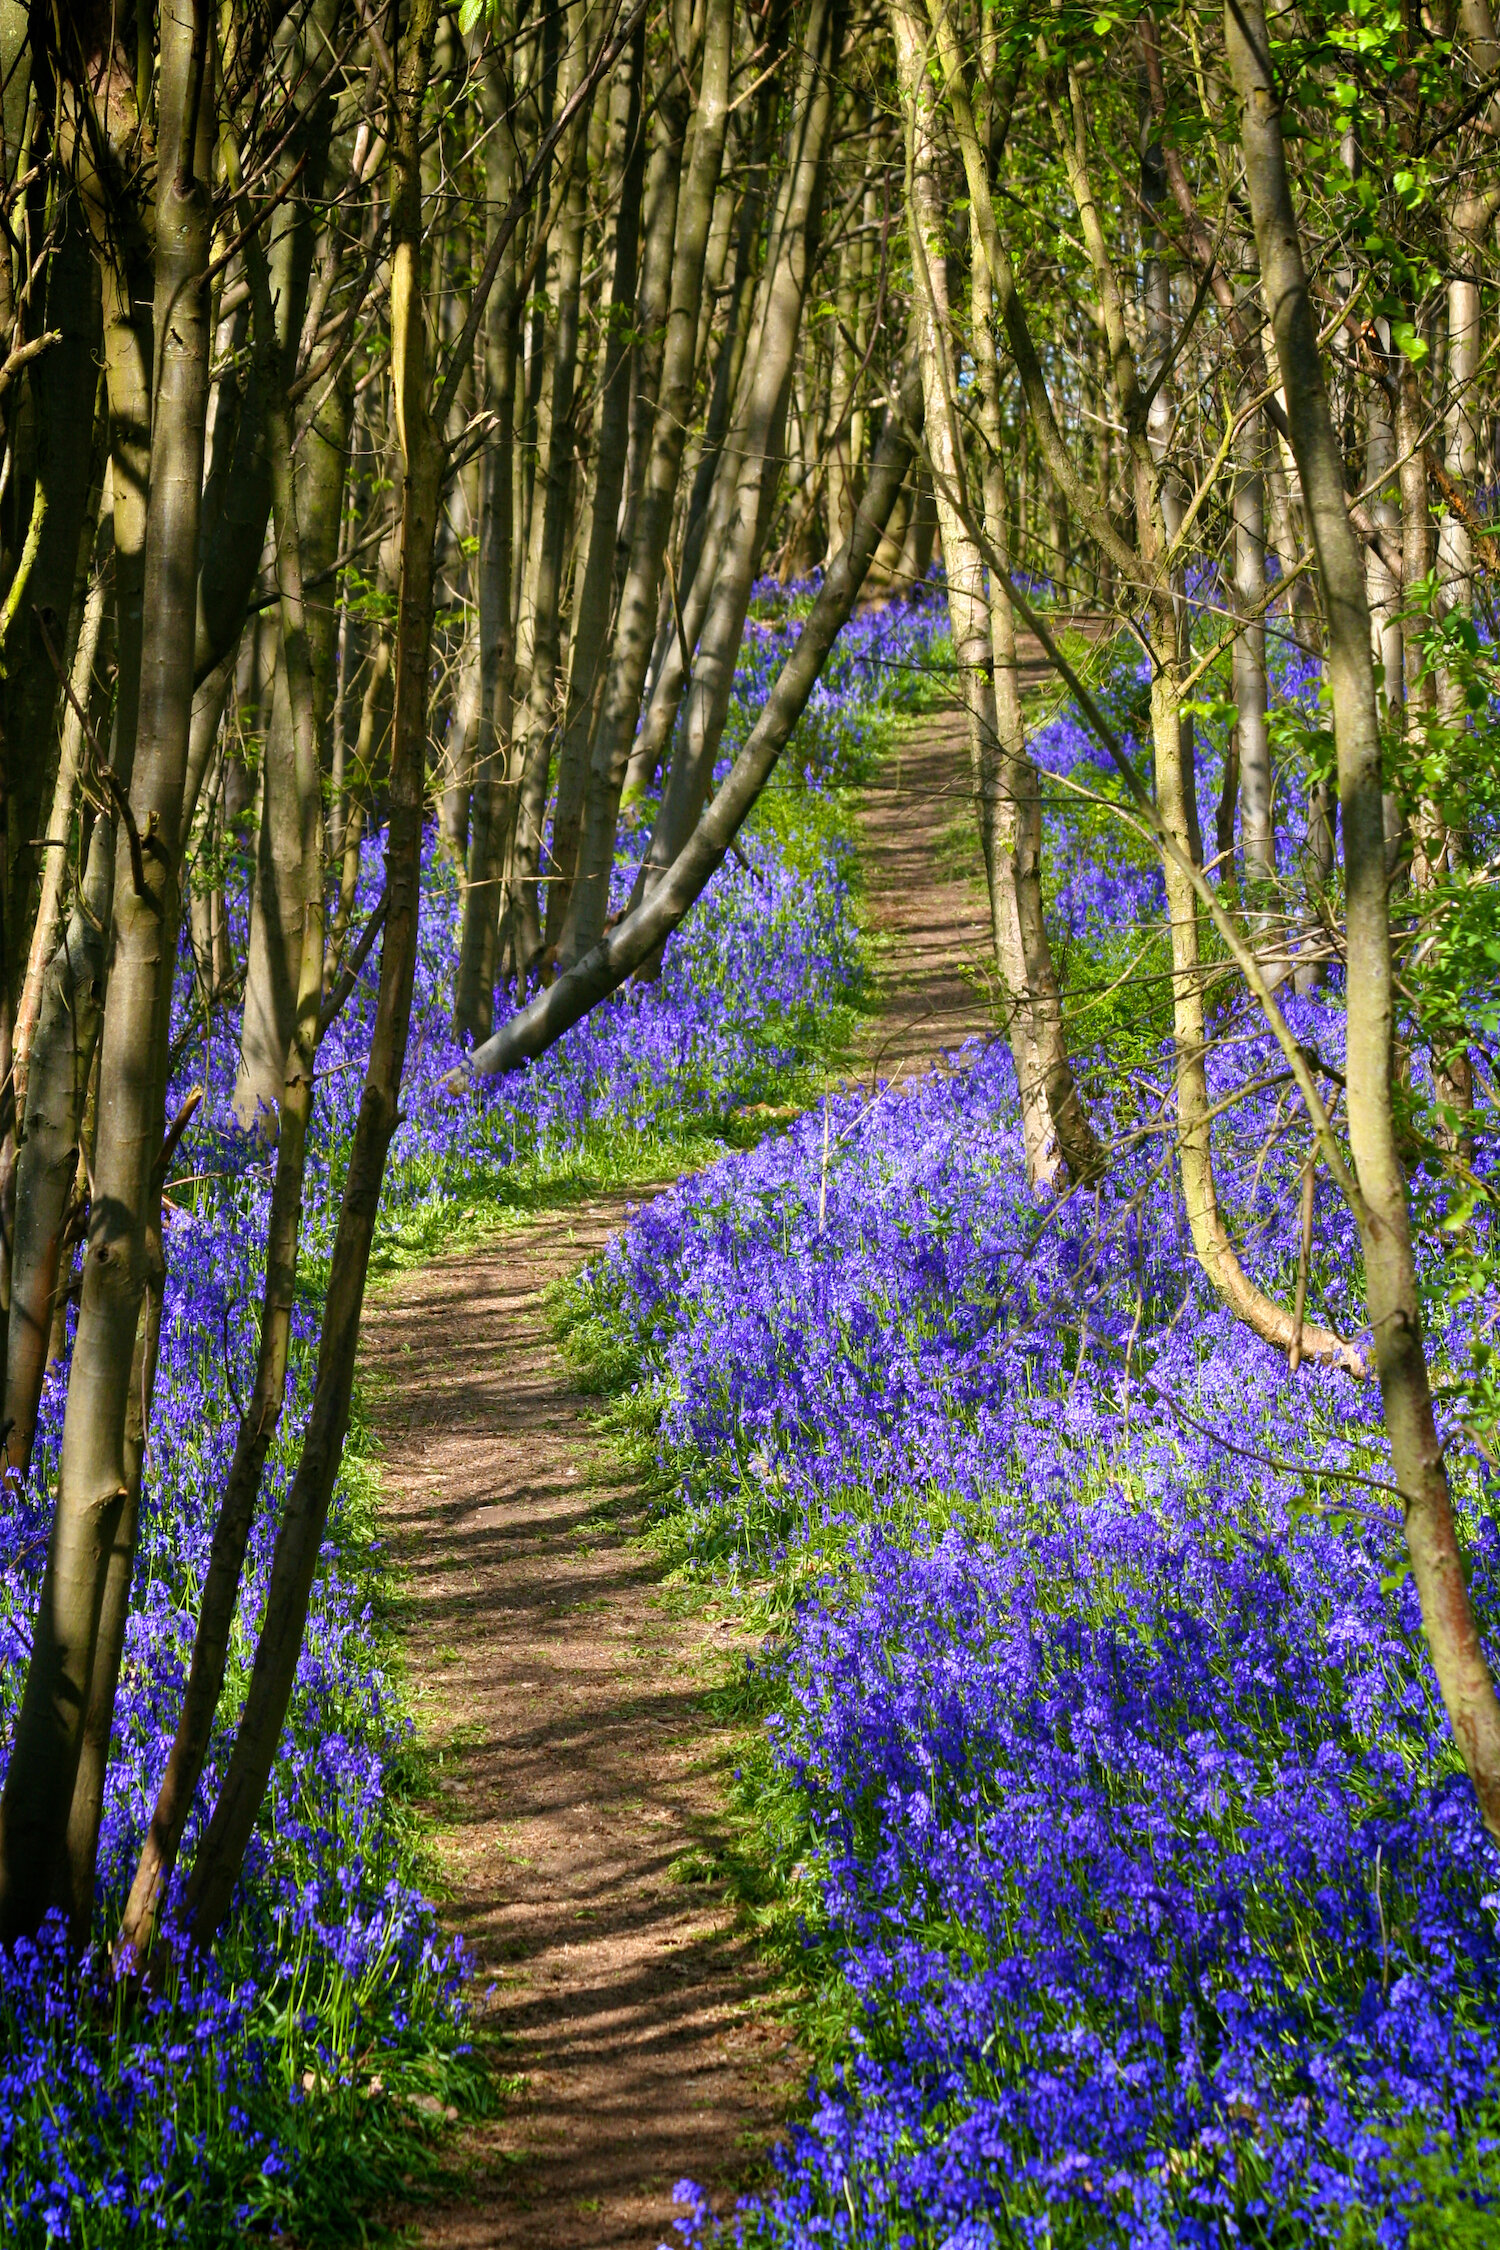 Riverhill-Gardens-Sevenoaks-Kent-Bluebell-Festival-2020-Chestnut-woods-walks.jpg